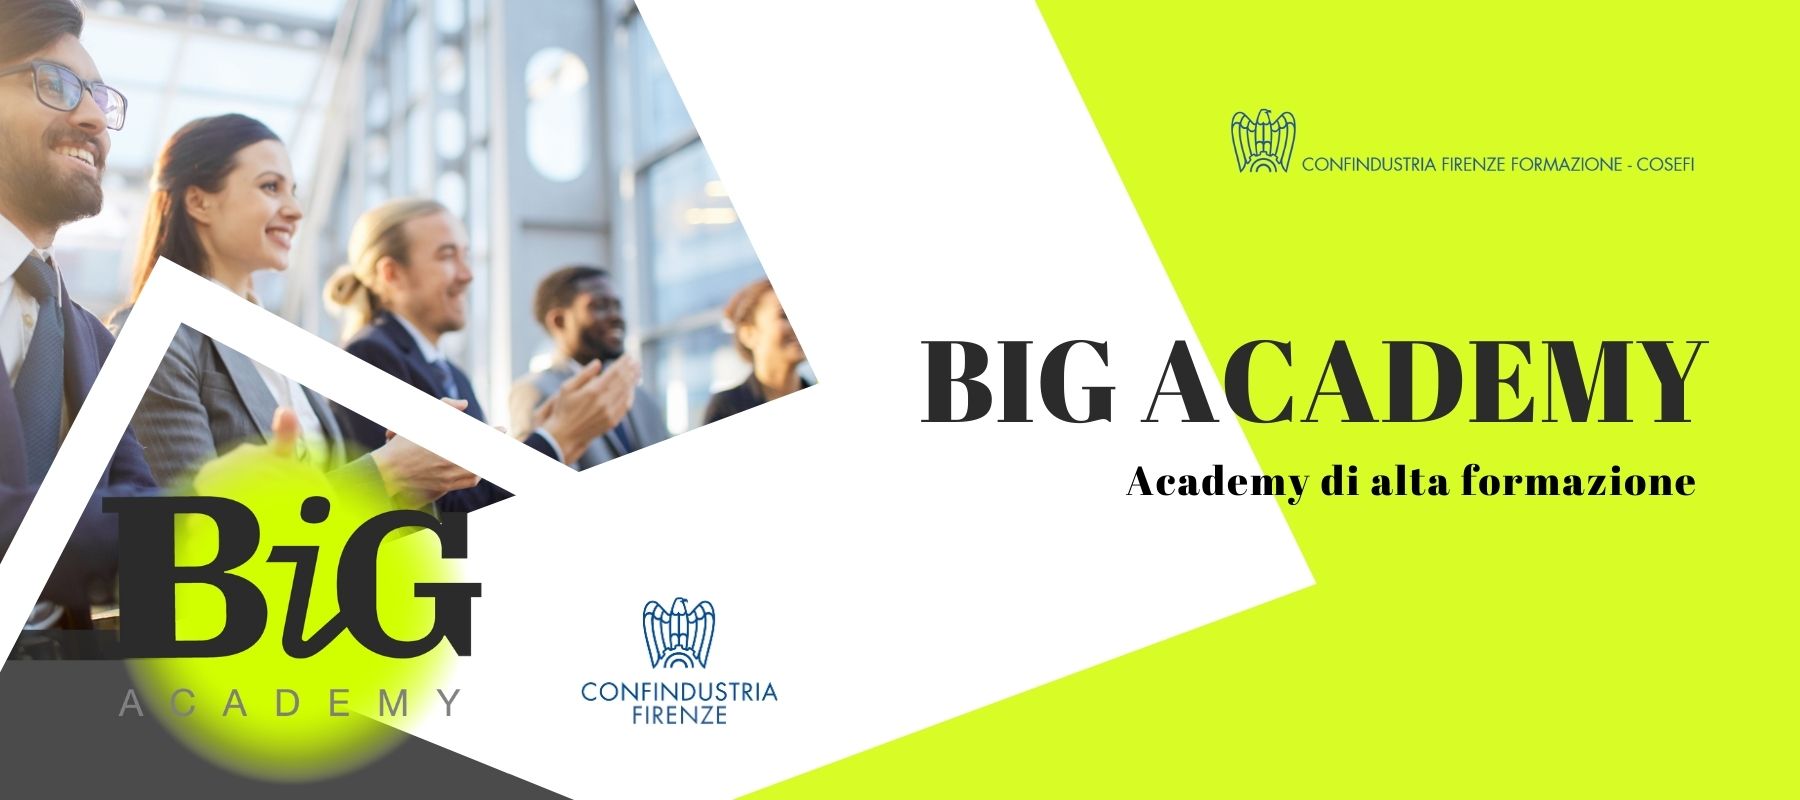 Big Academy – Academy di Alta formazione